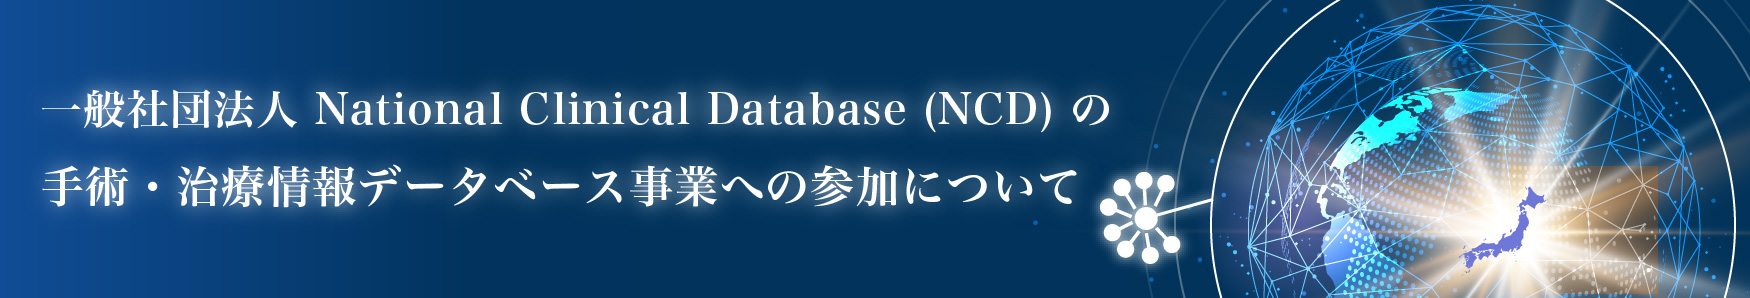 一般社団法人National Clinical Database(NCD)の手術・治療情報データベース事業への参加について